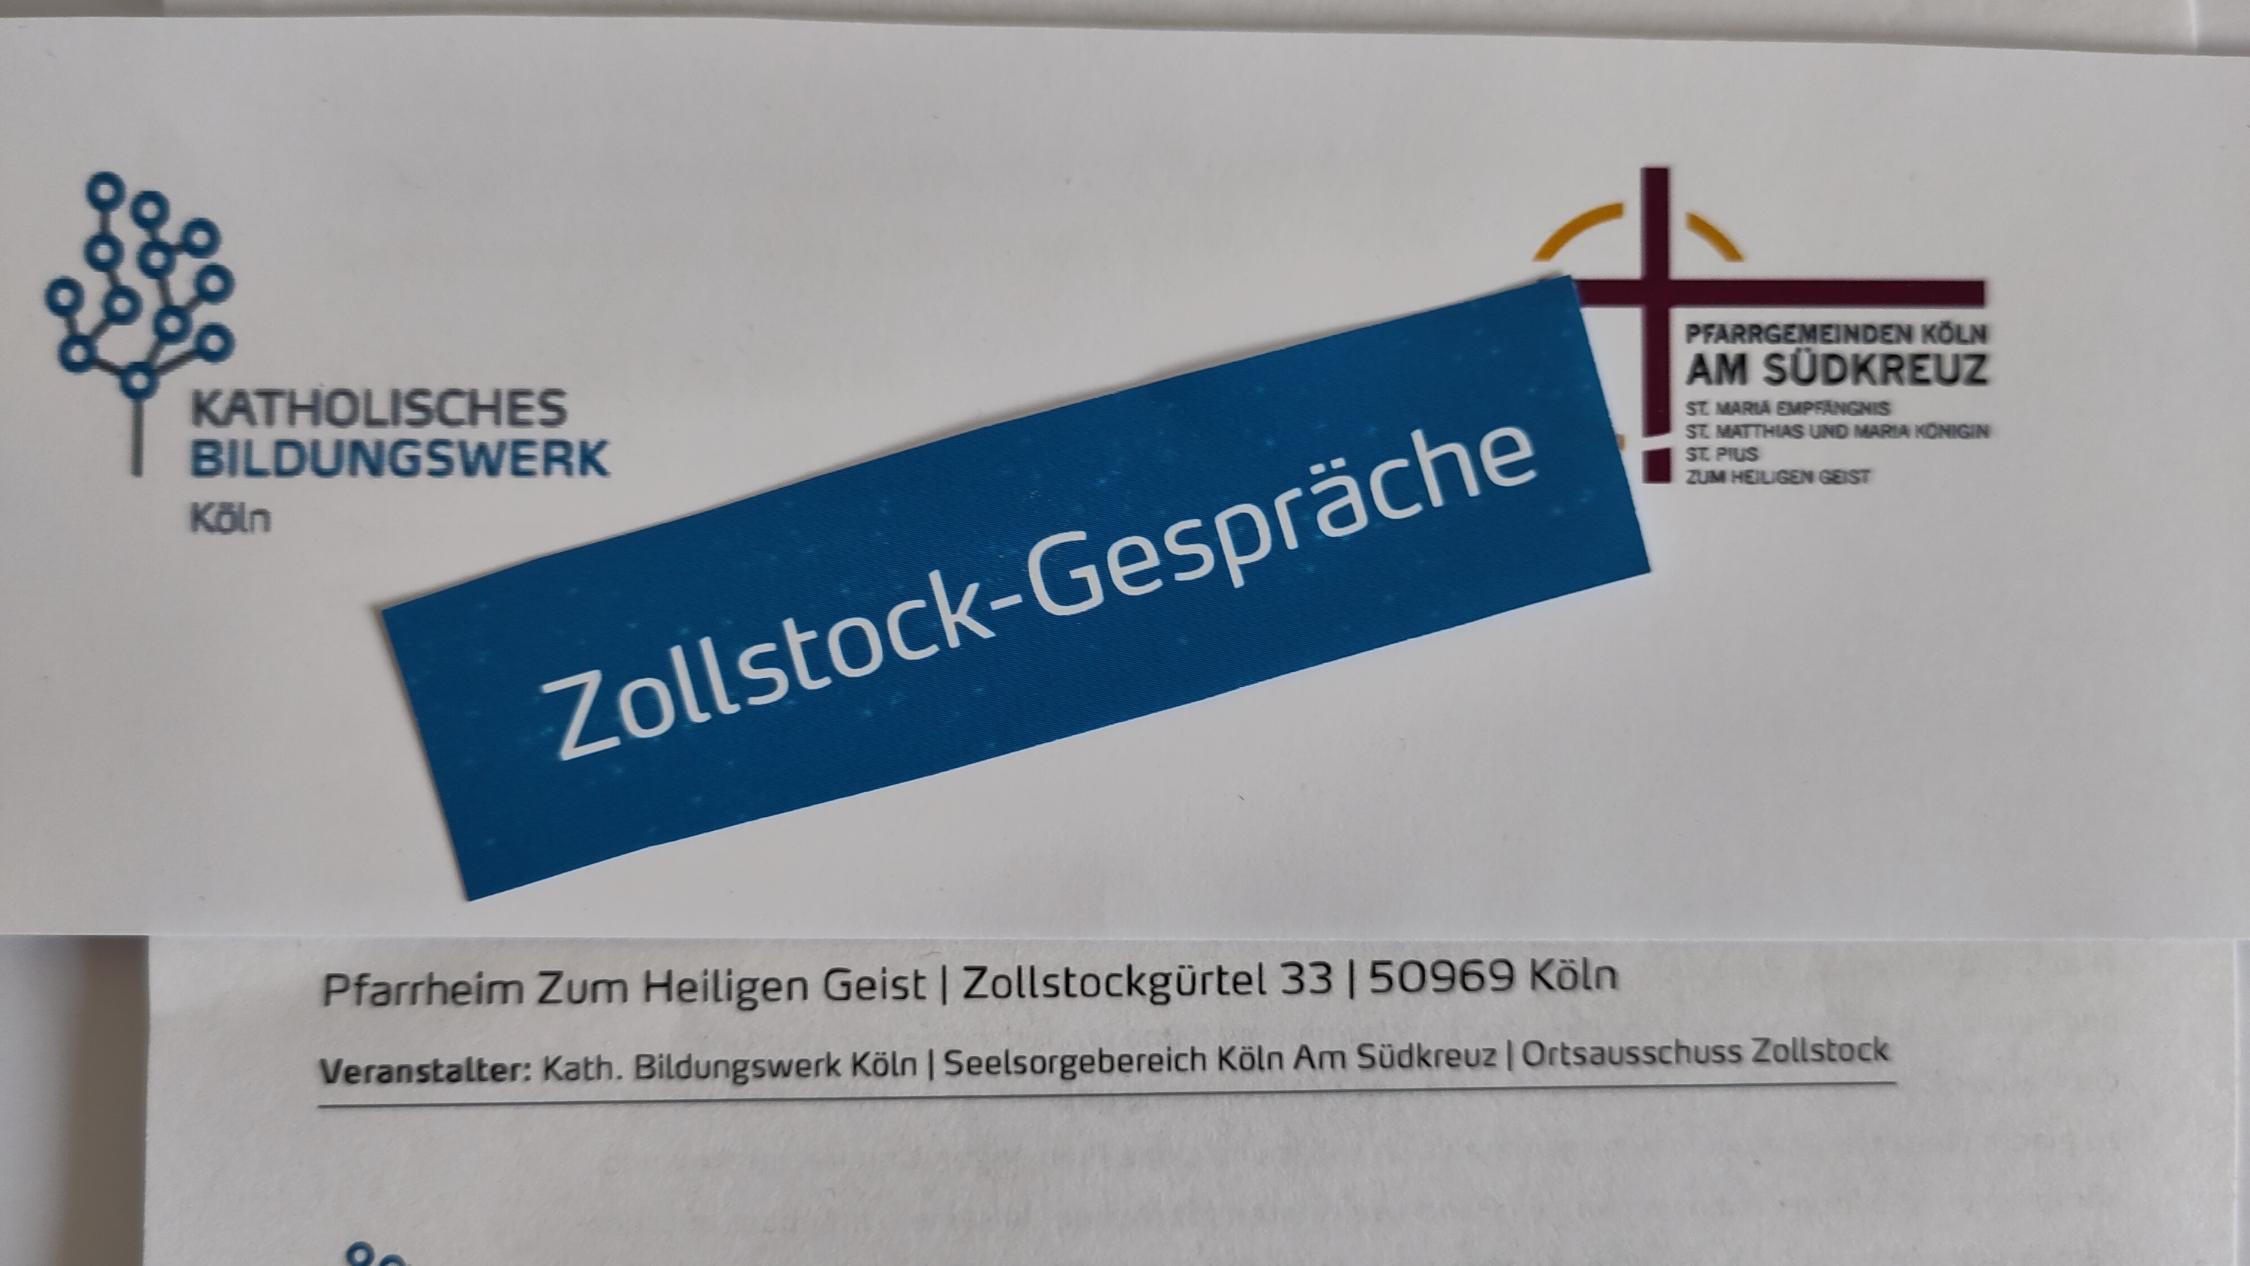 Zollstock-Gespräche